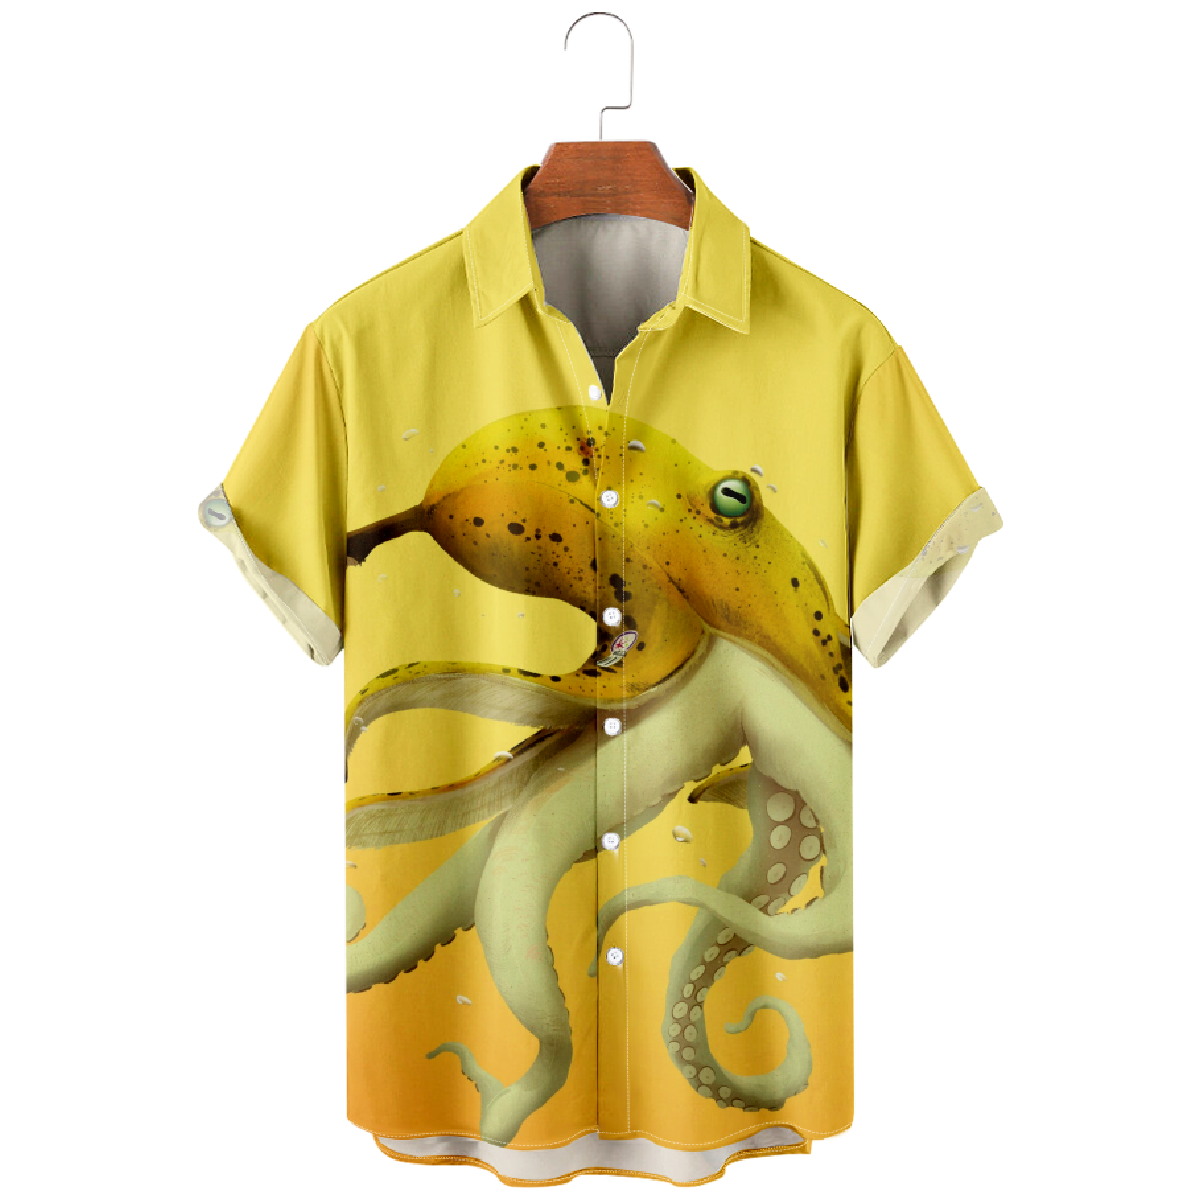 Yellow Banana Octopus Print Button Up Shirt for Men Short Sleeve Shirt Regular Fit